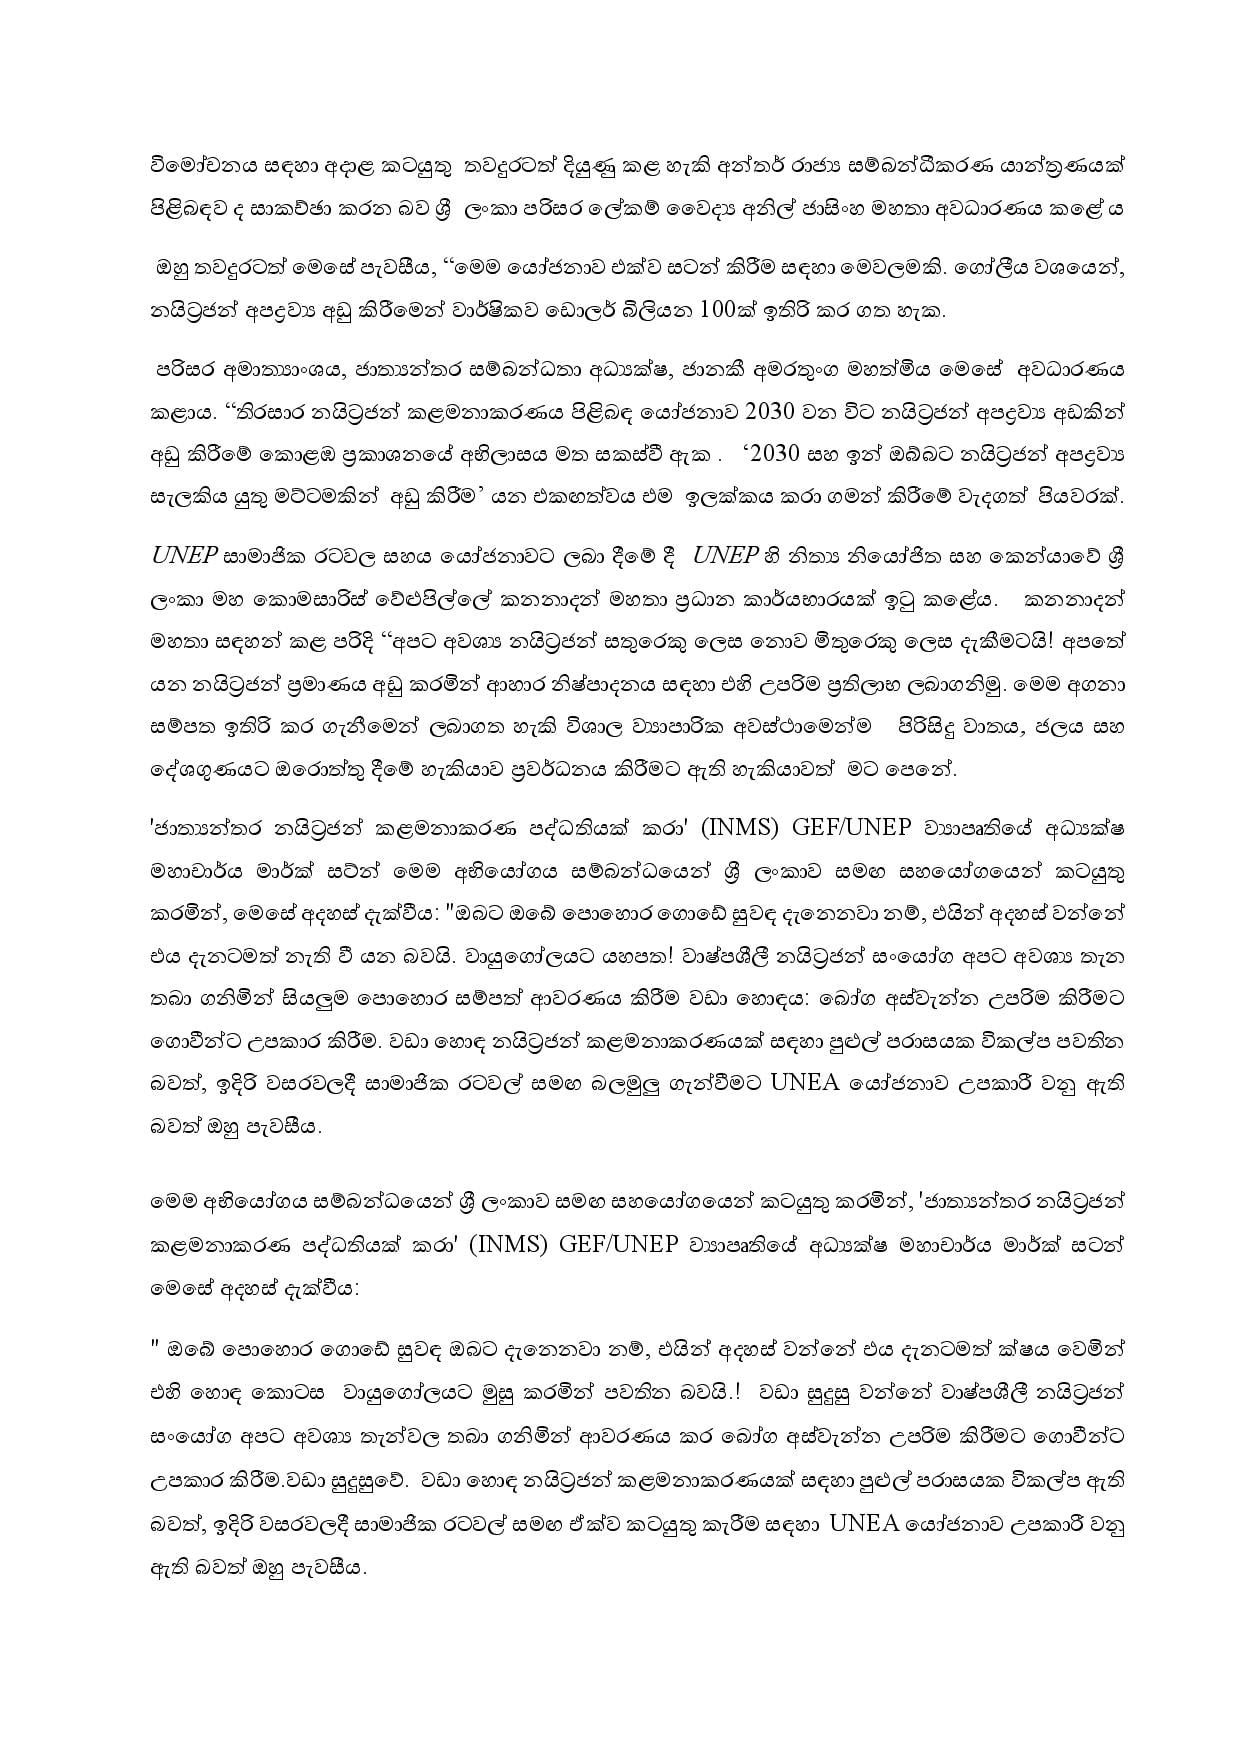 Sustainable Nitrogen Management Proposal of Srilanka